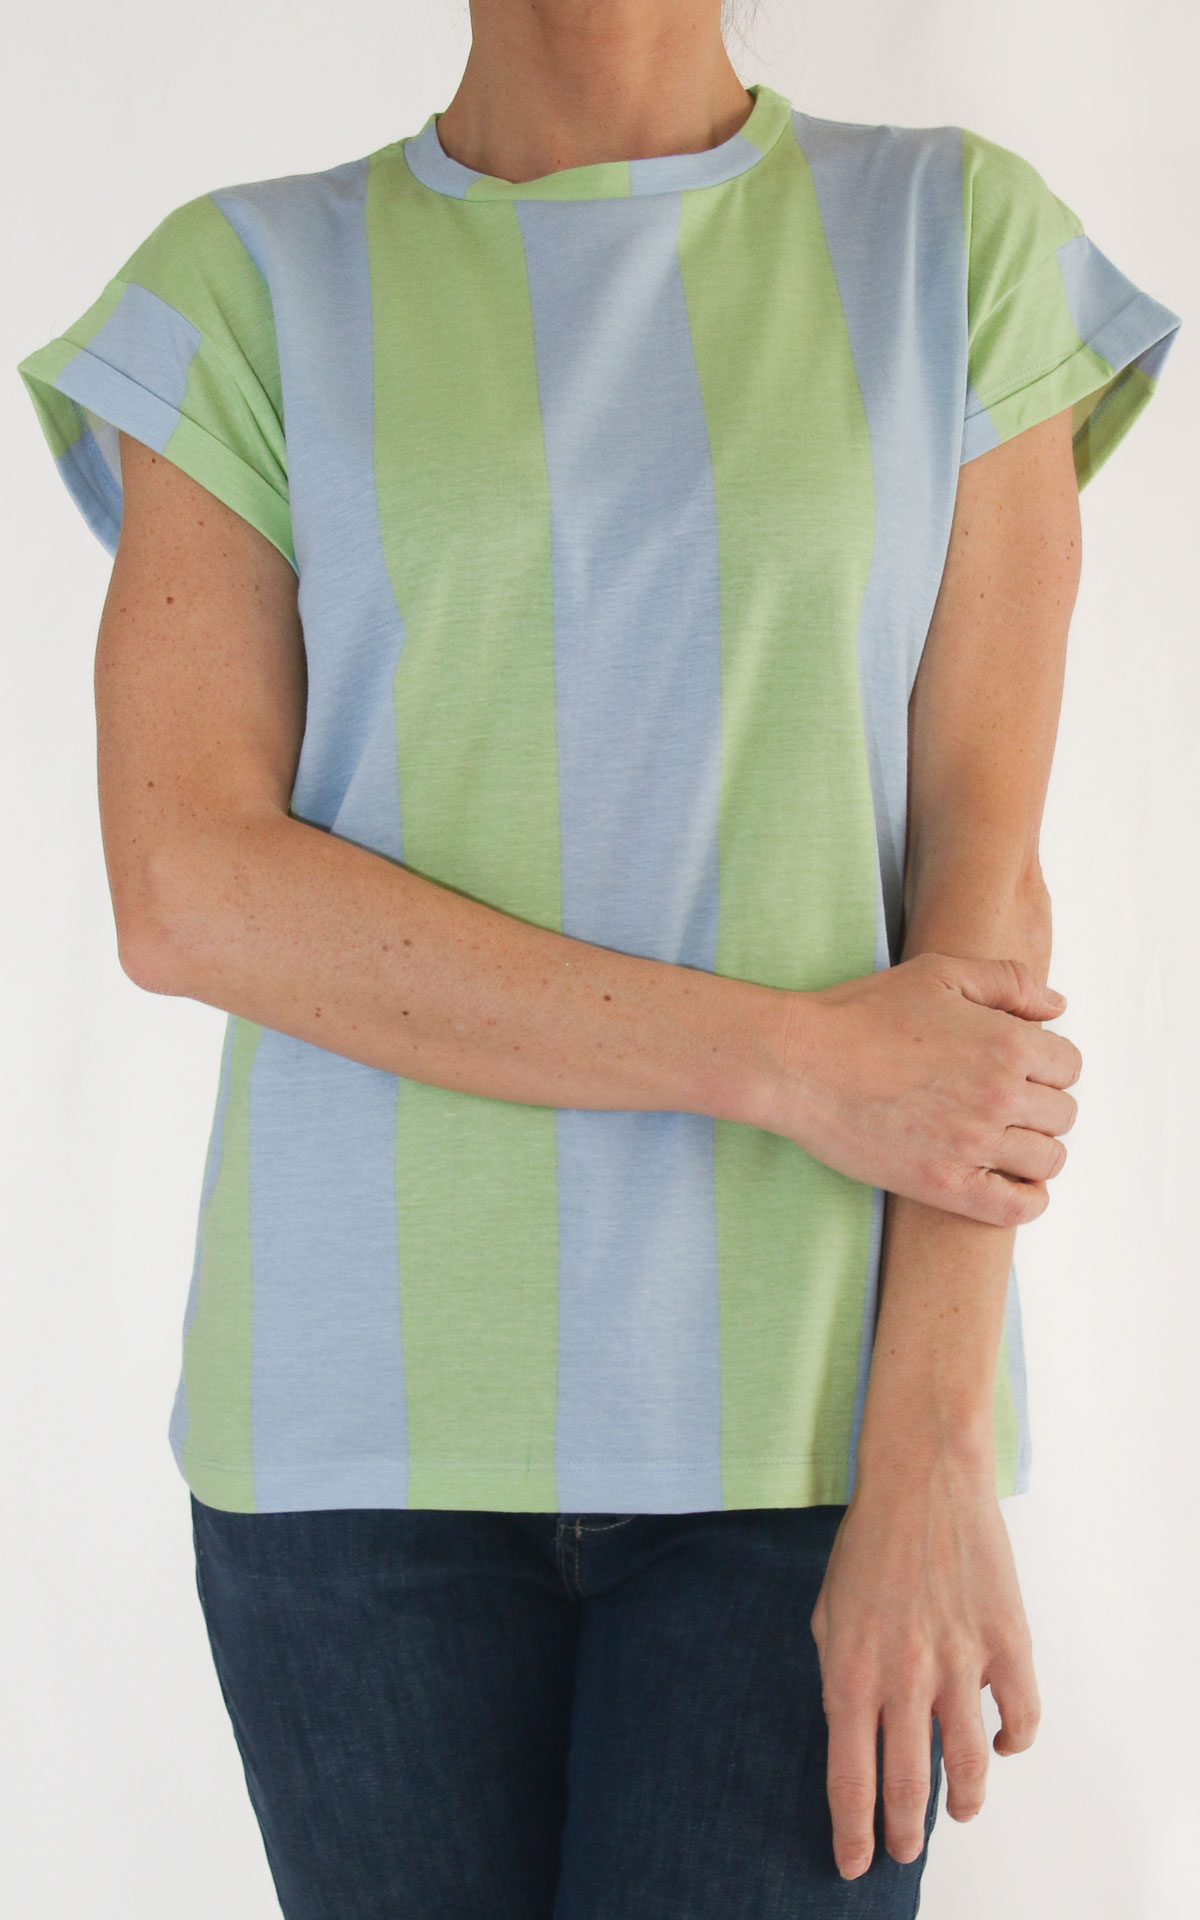 Compania fantastica - t-shirt riga verticale bicolore - Verde/azzurro